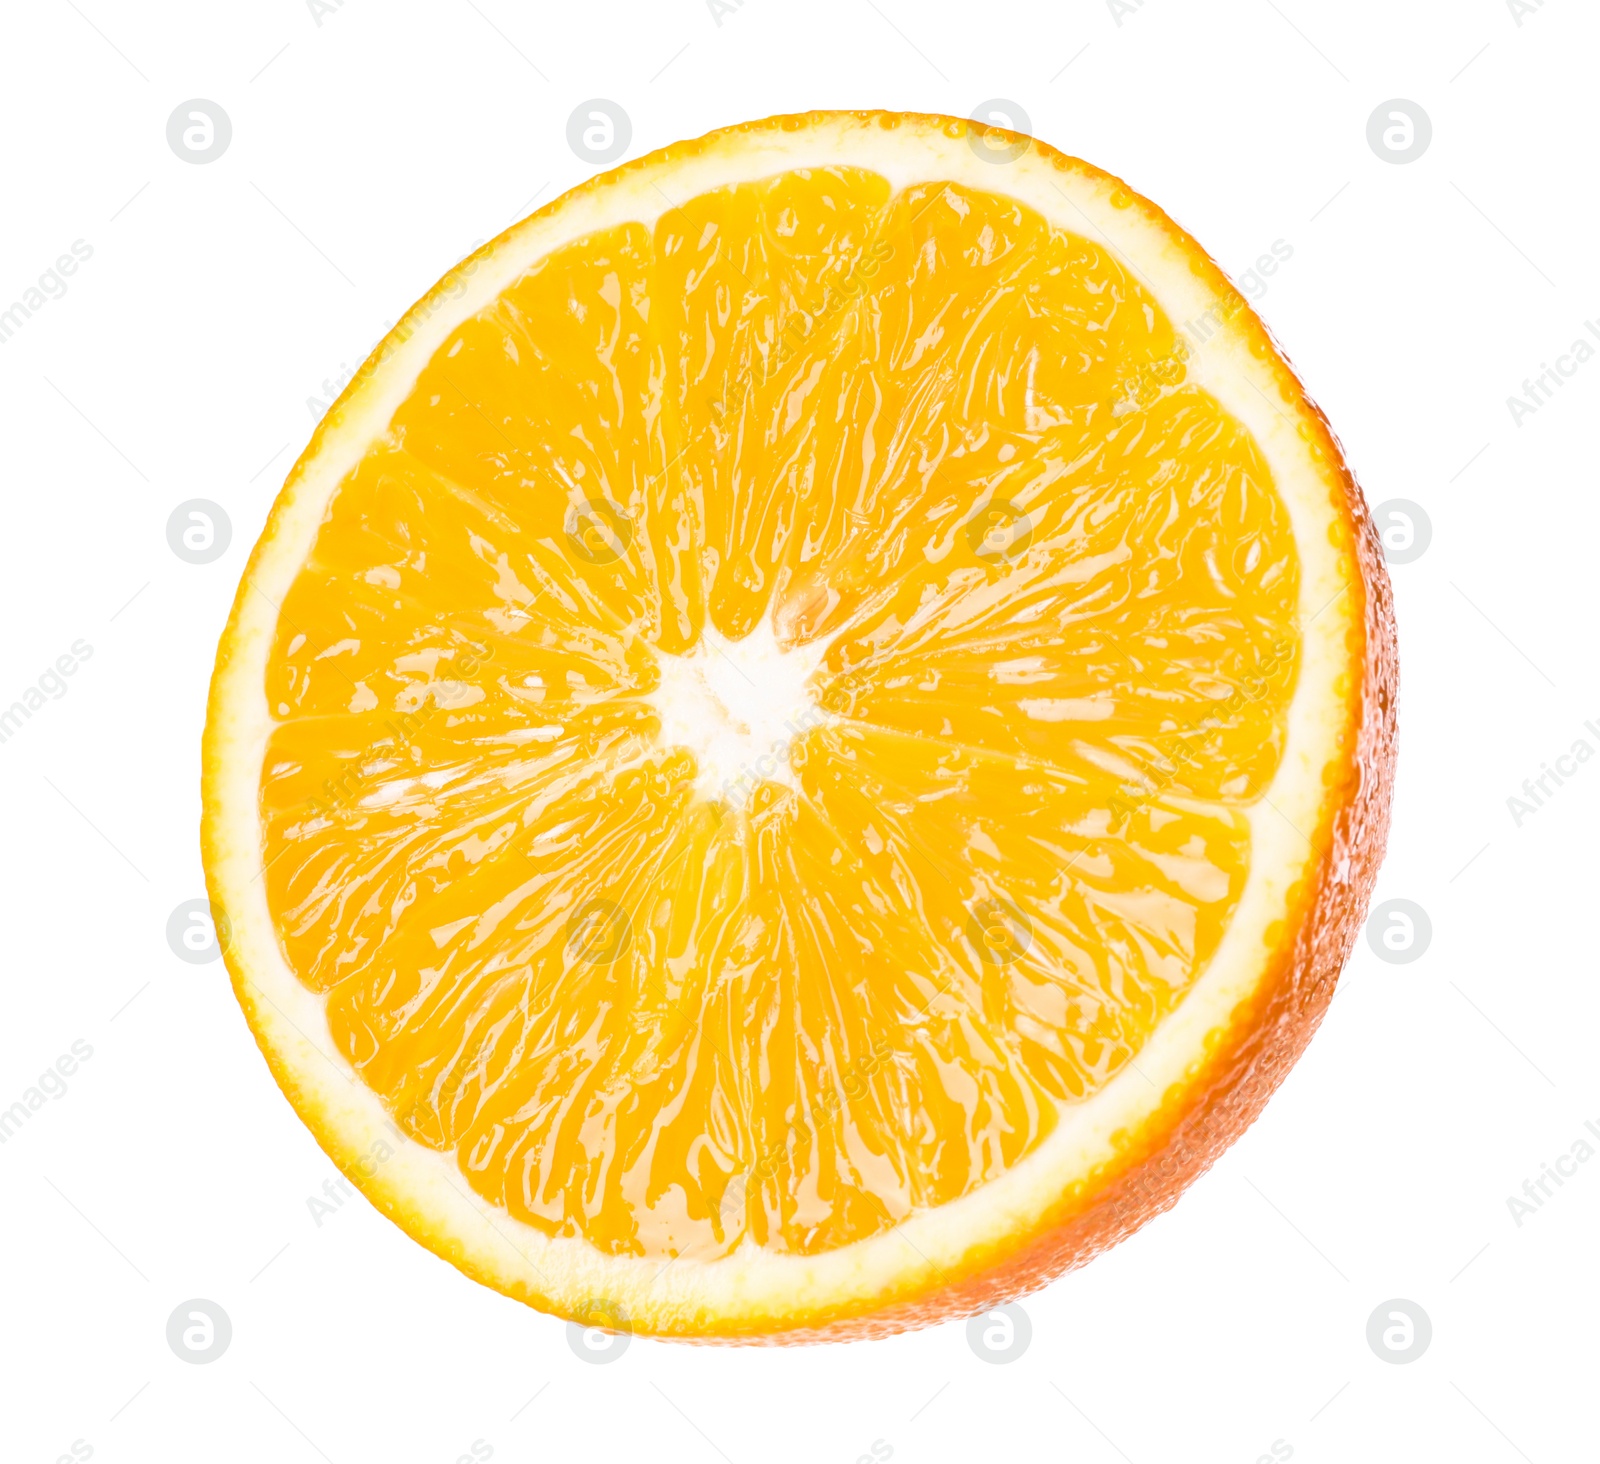 Photo of Half of fresh ripe orange isolated on white